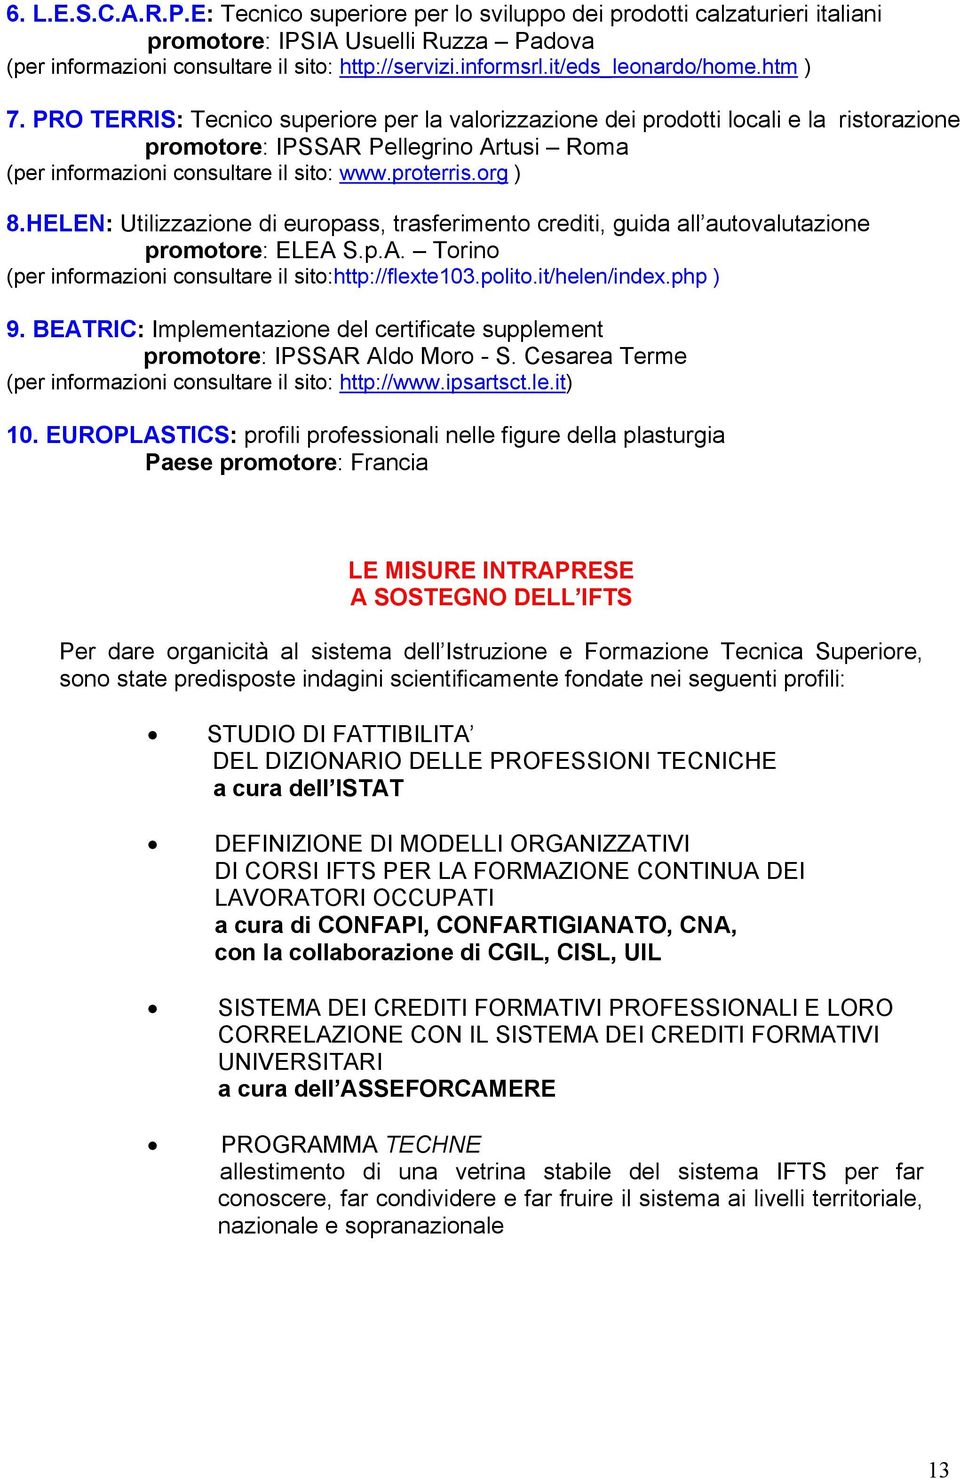 PRO TERRIS: Tecnico superiore per la valorizzazione dei prodotti locali e la ristorazione promotore: IPSSAR Pellegrino Artusi Roma (per informazioni consultare il sito: www.proterris.org ) 8.